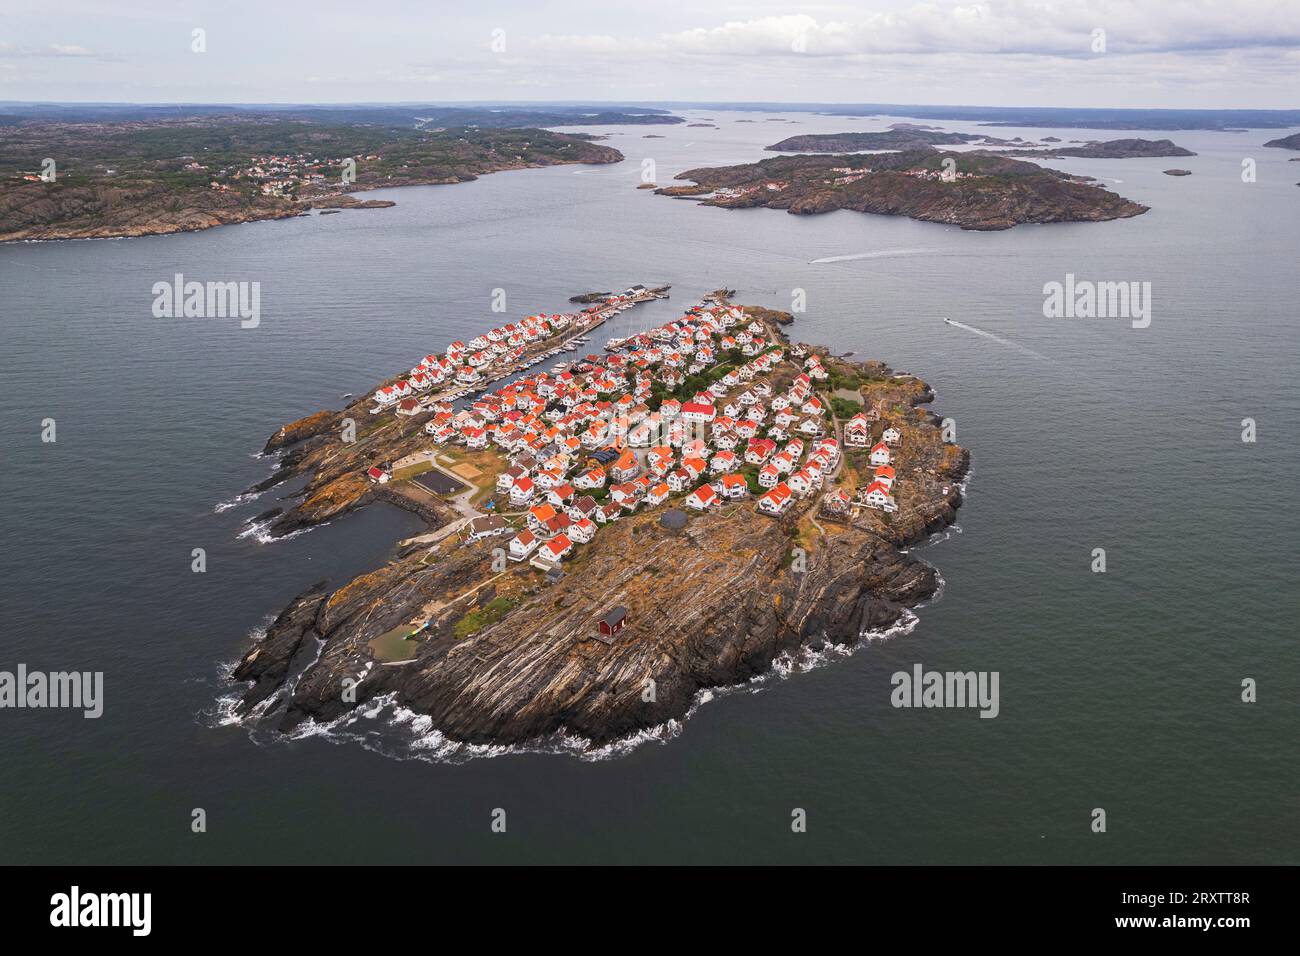 Vue aérienne de l’île et du village de pêcheurs d’Astol, municipalité de Tjorn, Vastra Gotaland, Gotaland, Suède, Scandinavie, Europe Banque D'Images